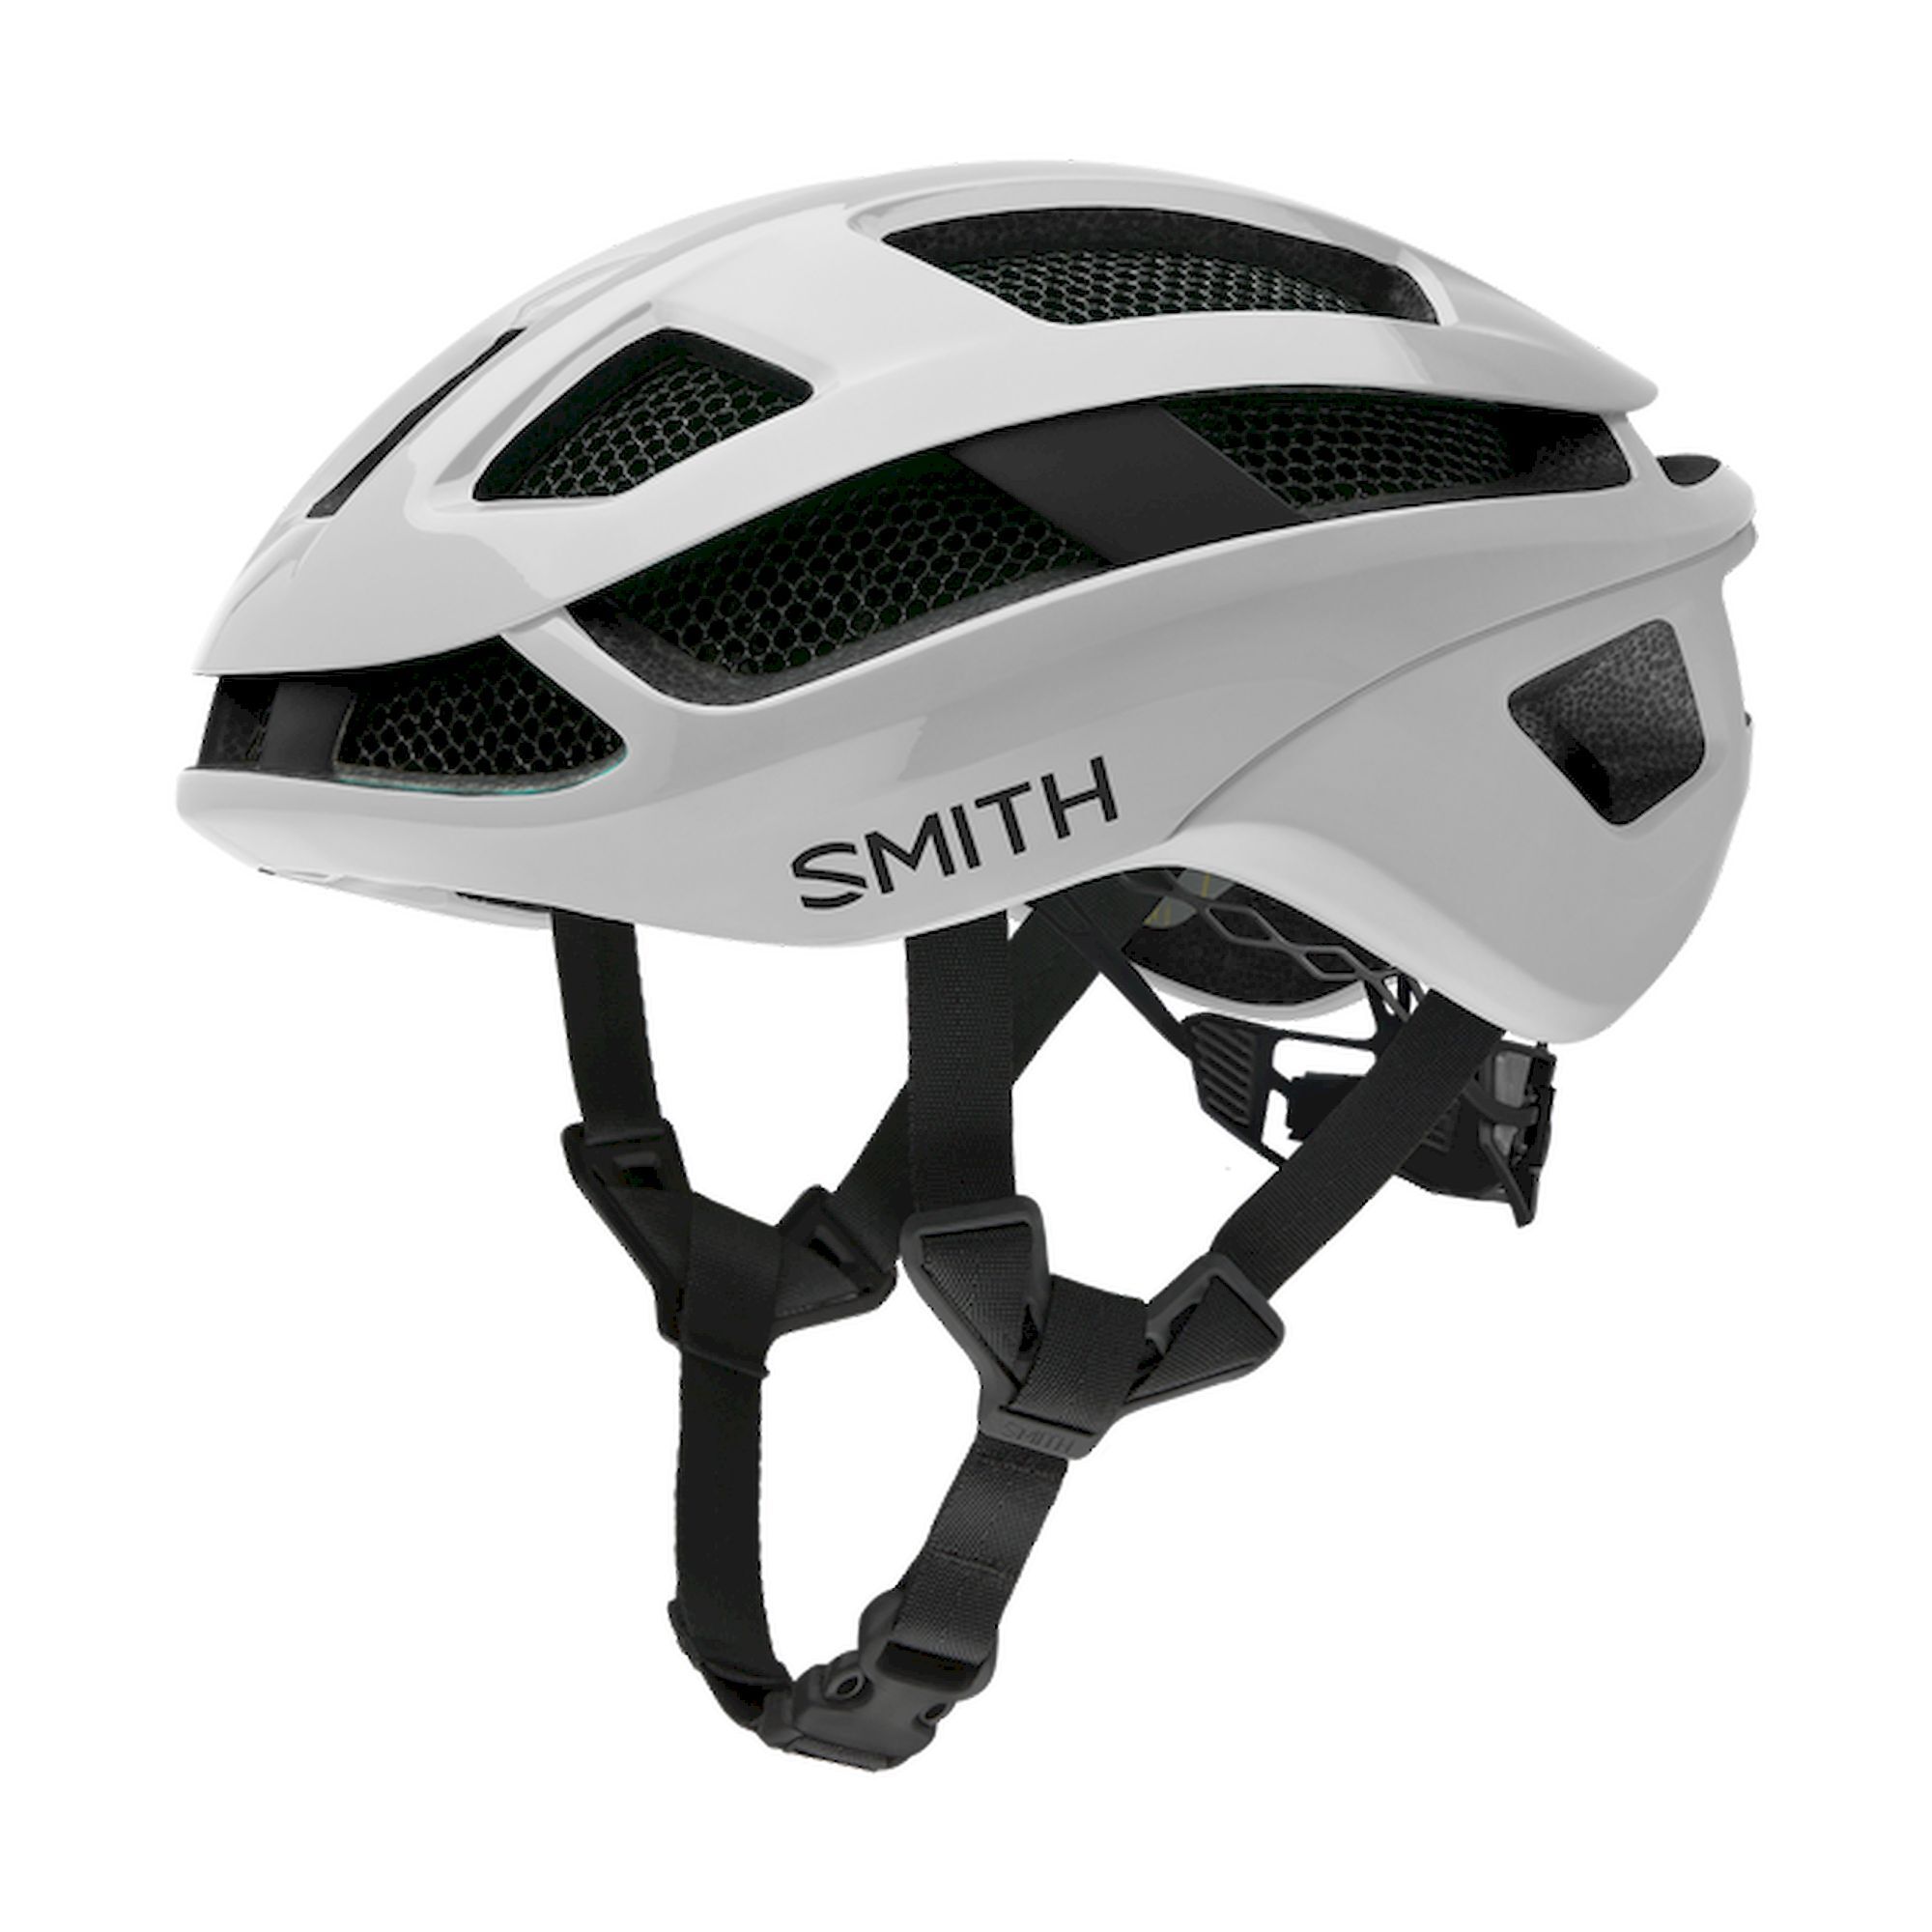 Smith Trace Mips - Road bike helmet